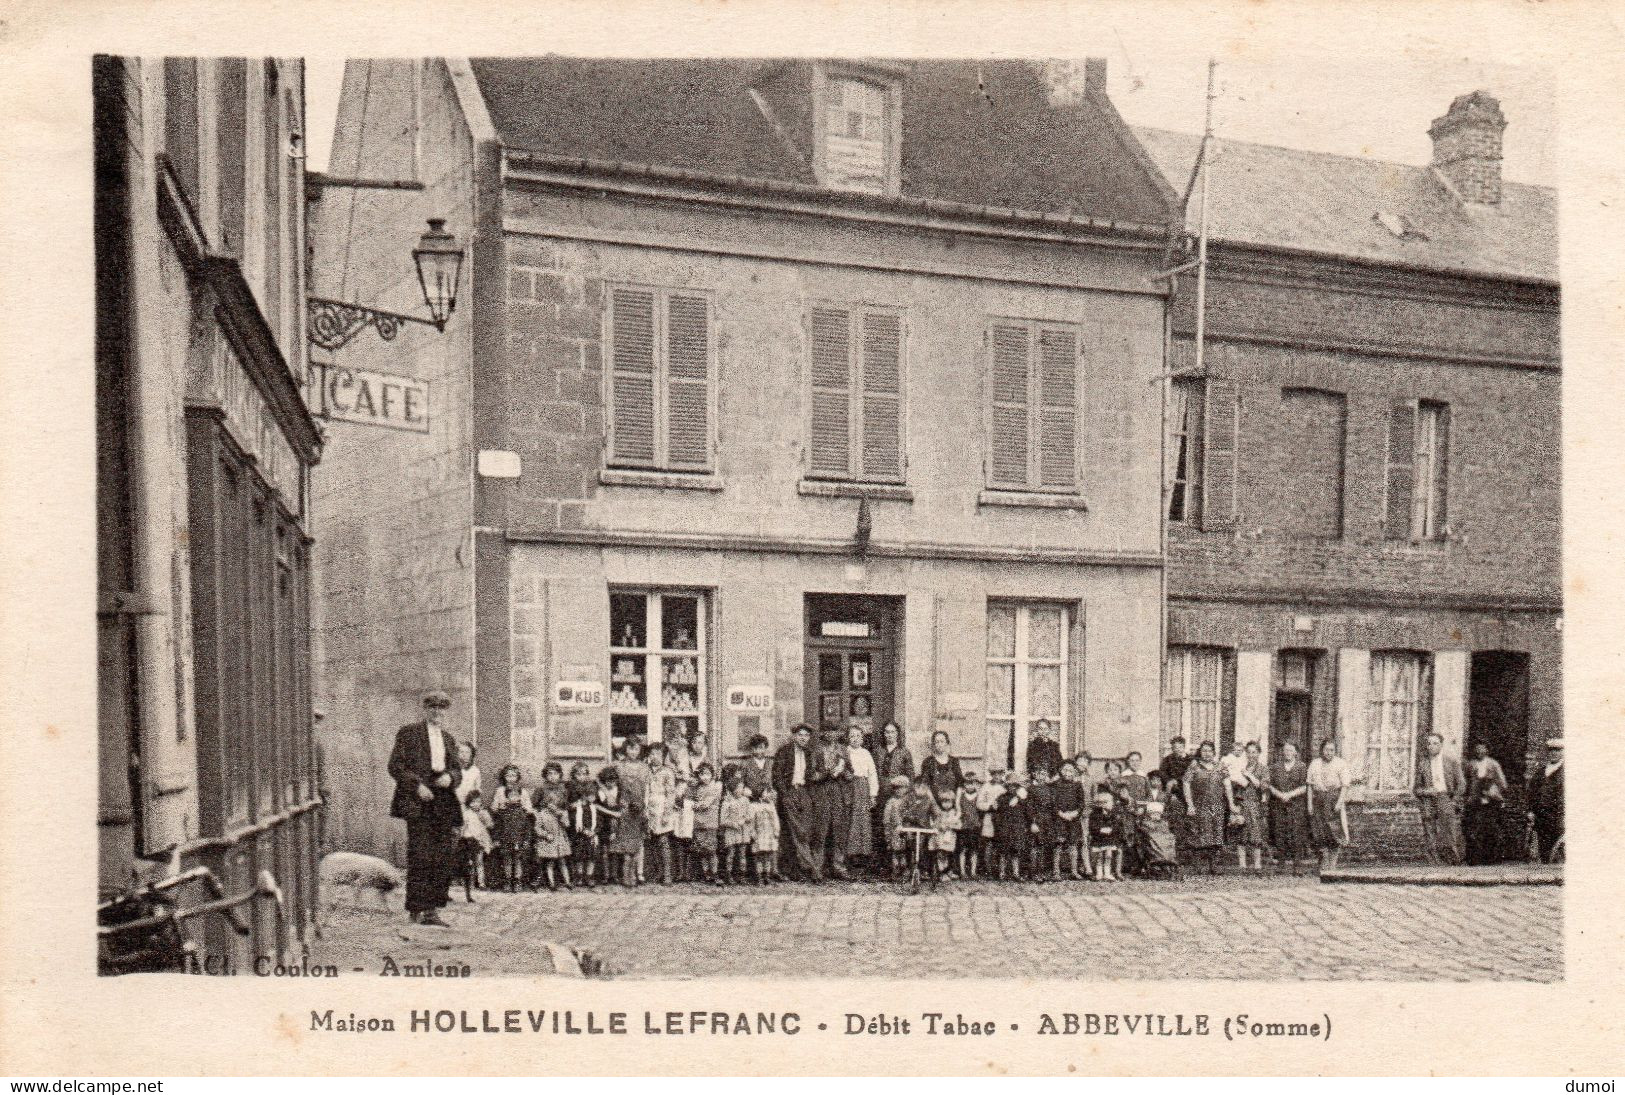 ABBEVILLE  (Somme)  - Débit Tabac  -  Maison HOLLEVILLE LEFRANC - Abbeville